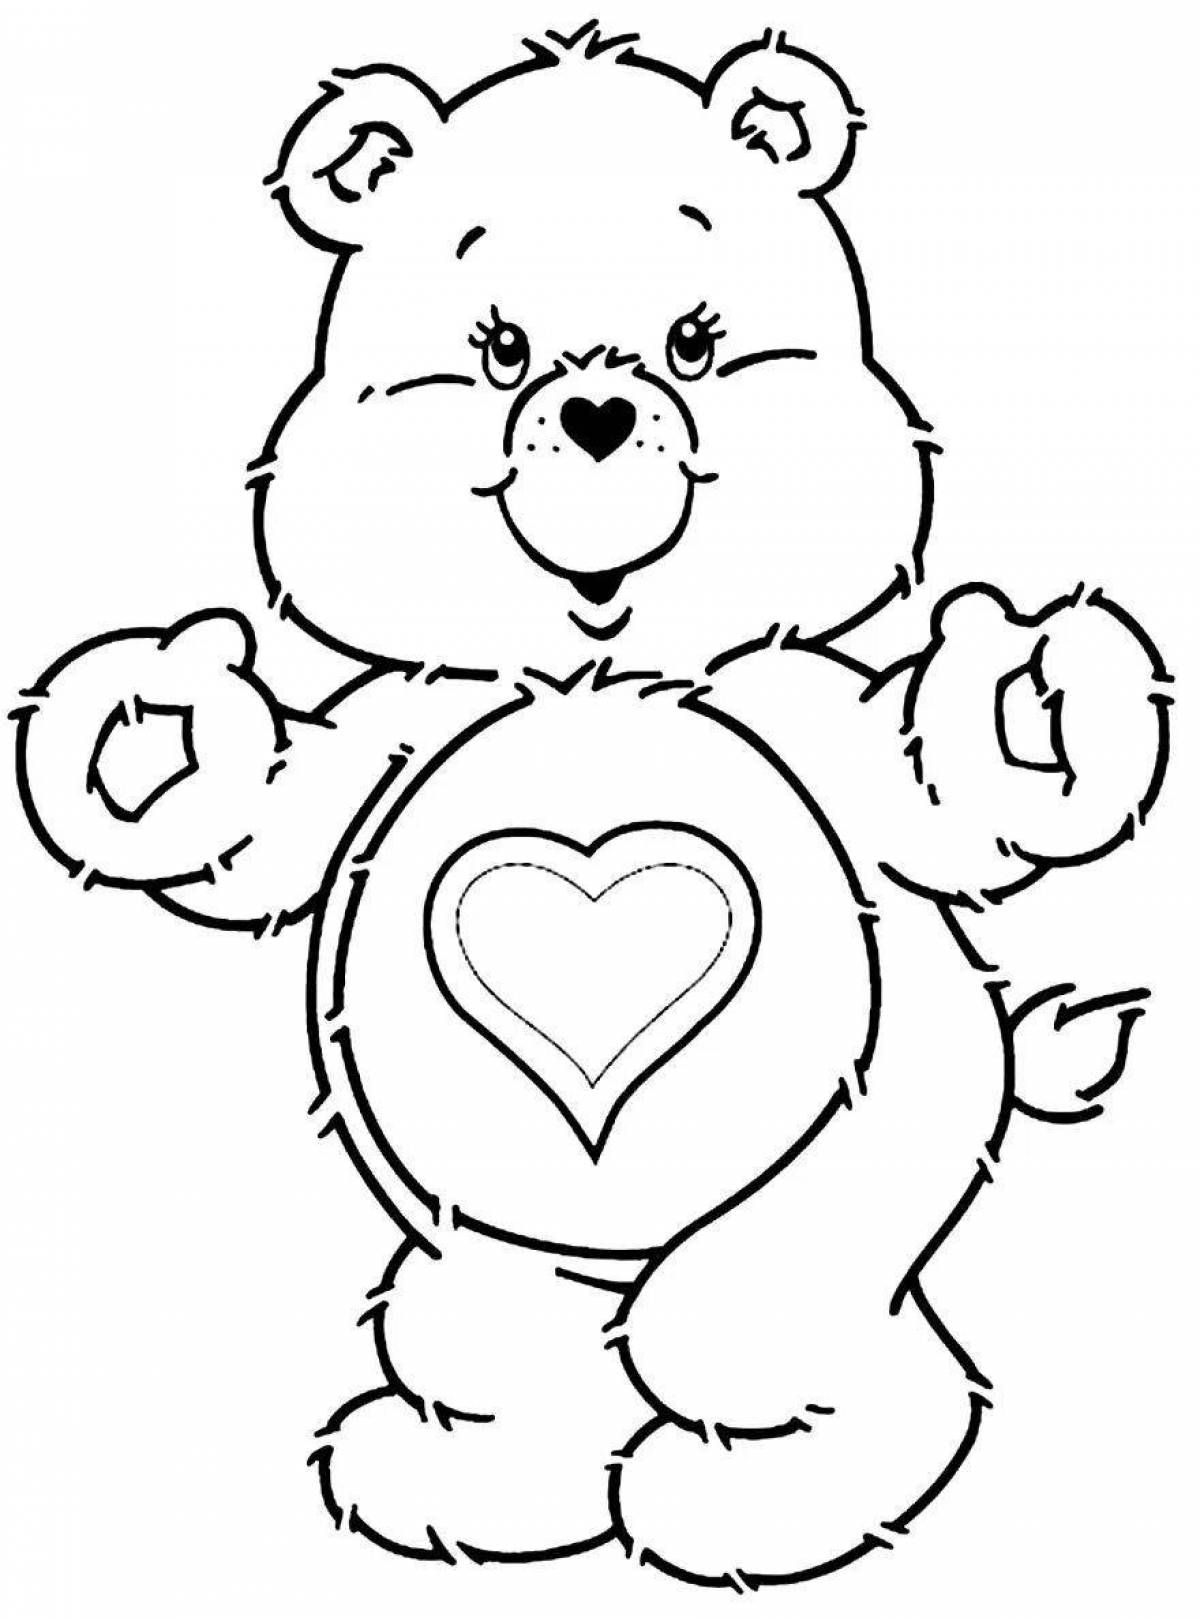 Раскраска медведь с сердцем